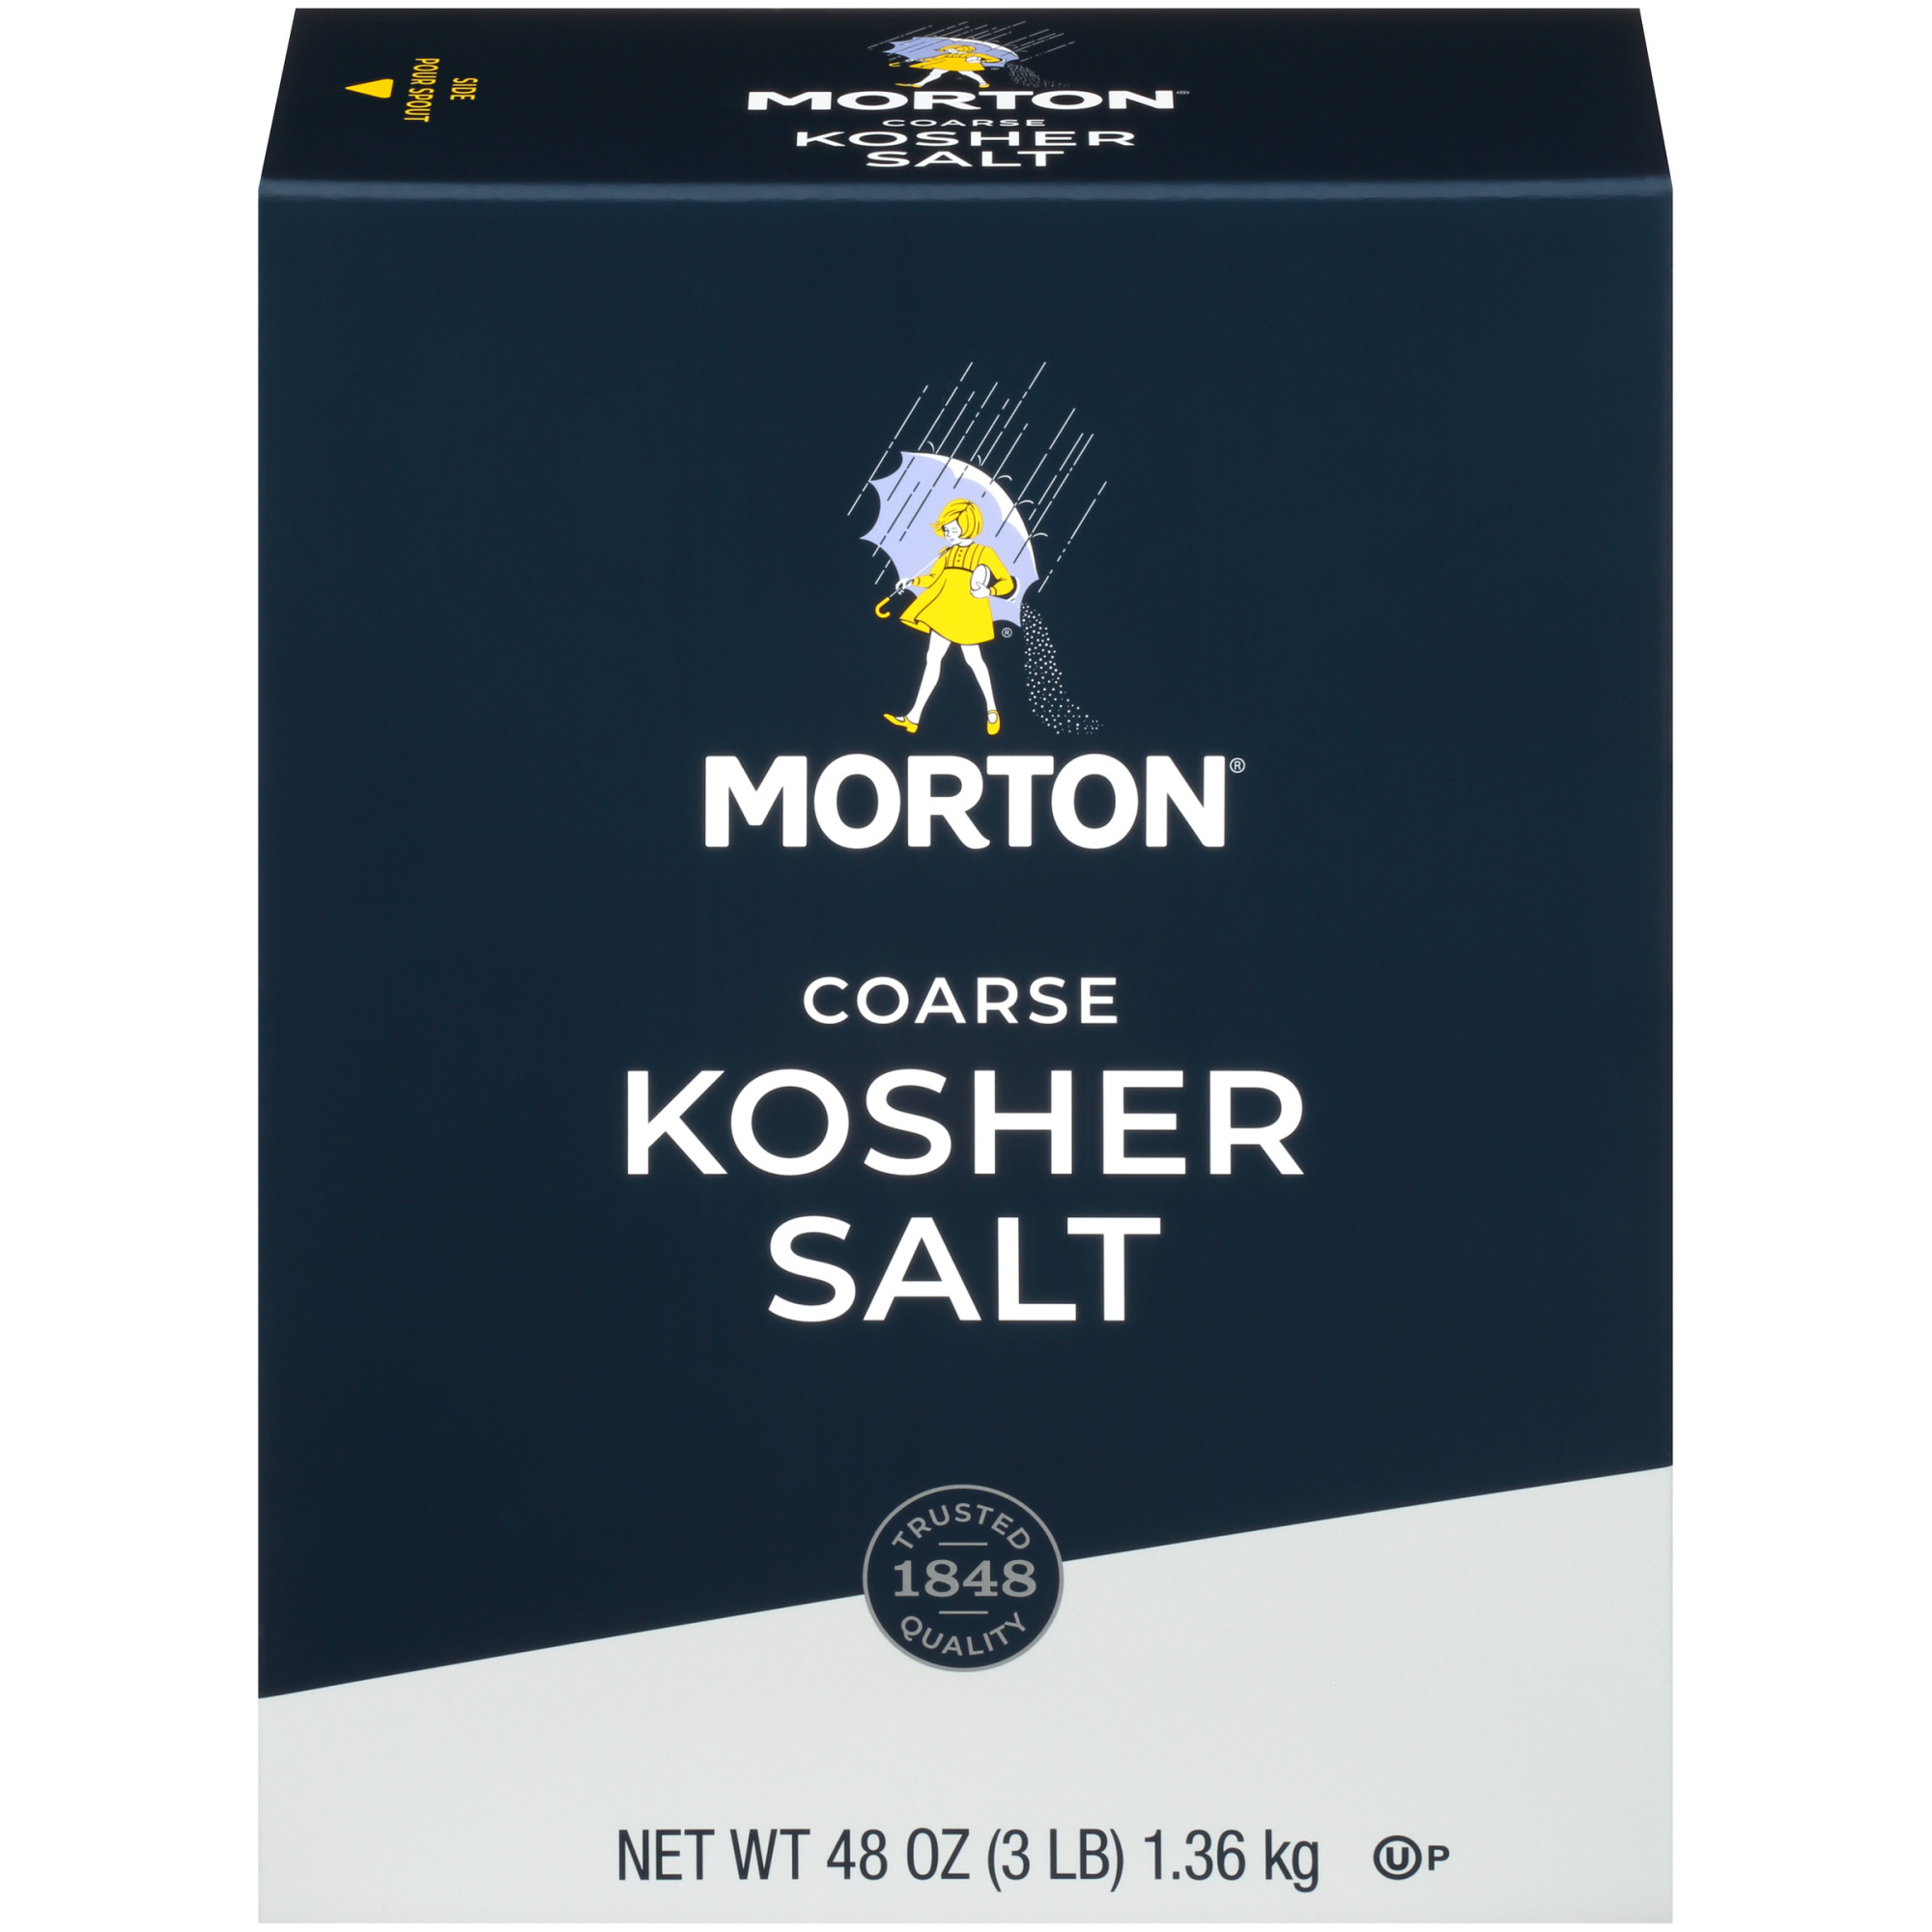 Morton Salt Coarse Kosher Salt – for Cooking, Grilling, Brining, & Salt Rimming, 48 oz box - image 1 of 12